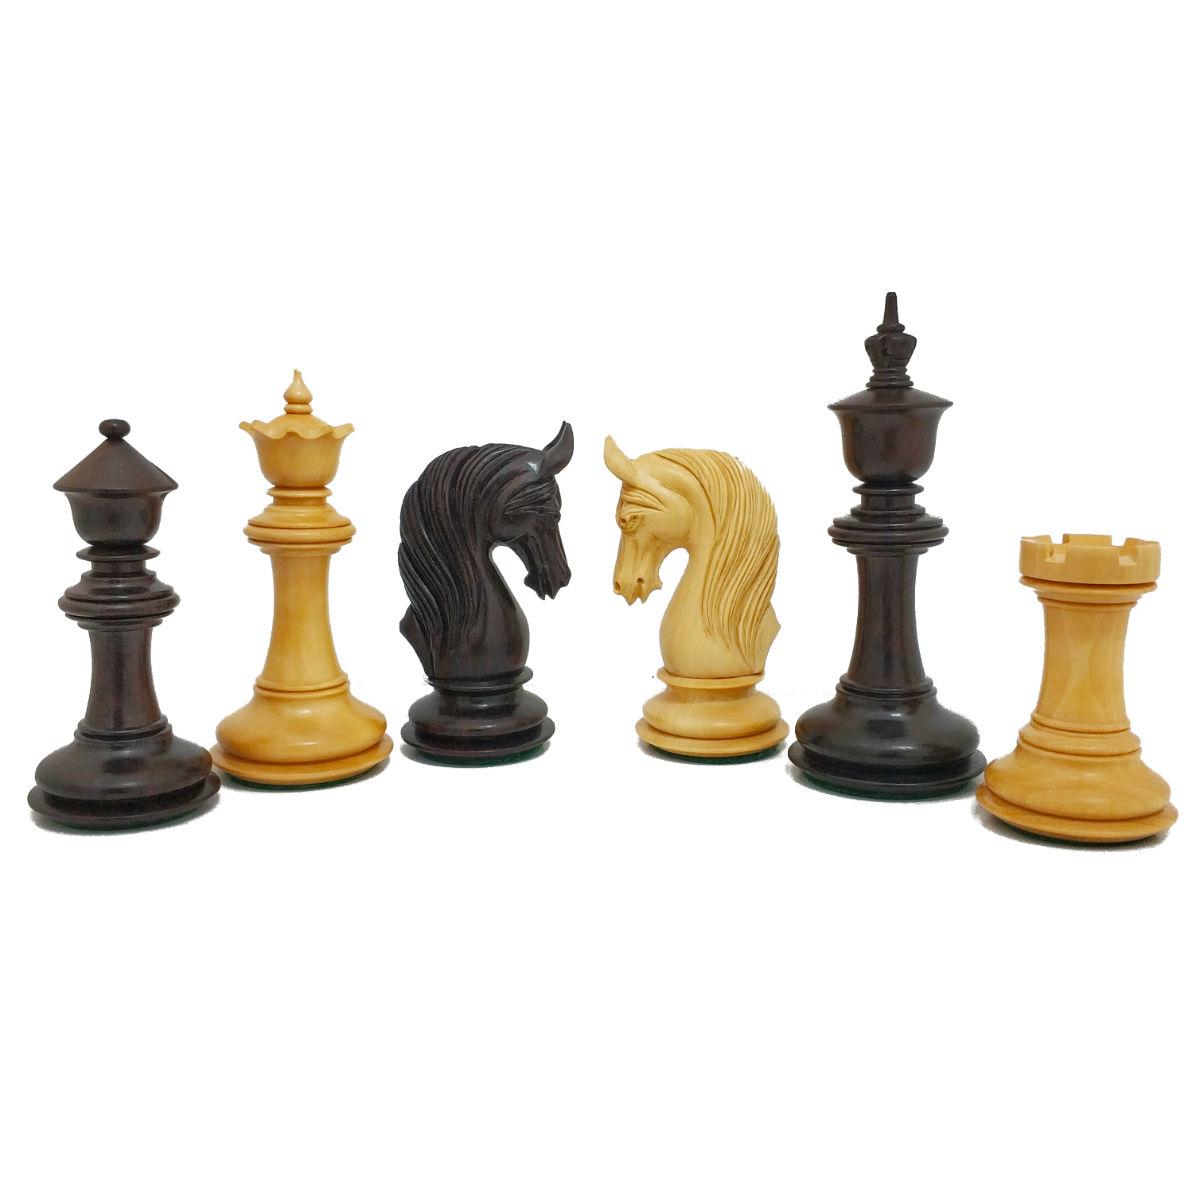 כלי שחמט אלוורנו שישאם Alverno Shisham